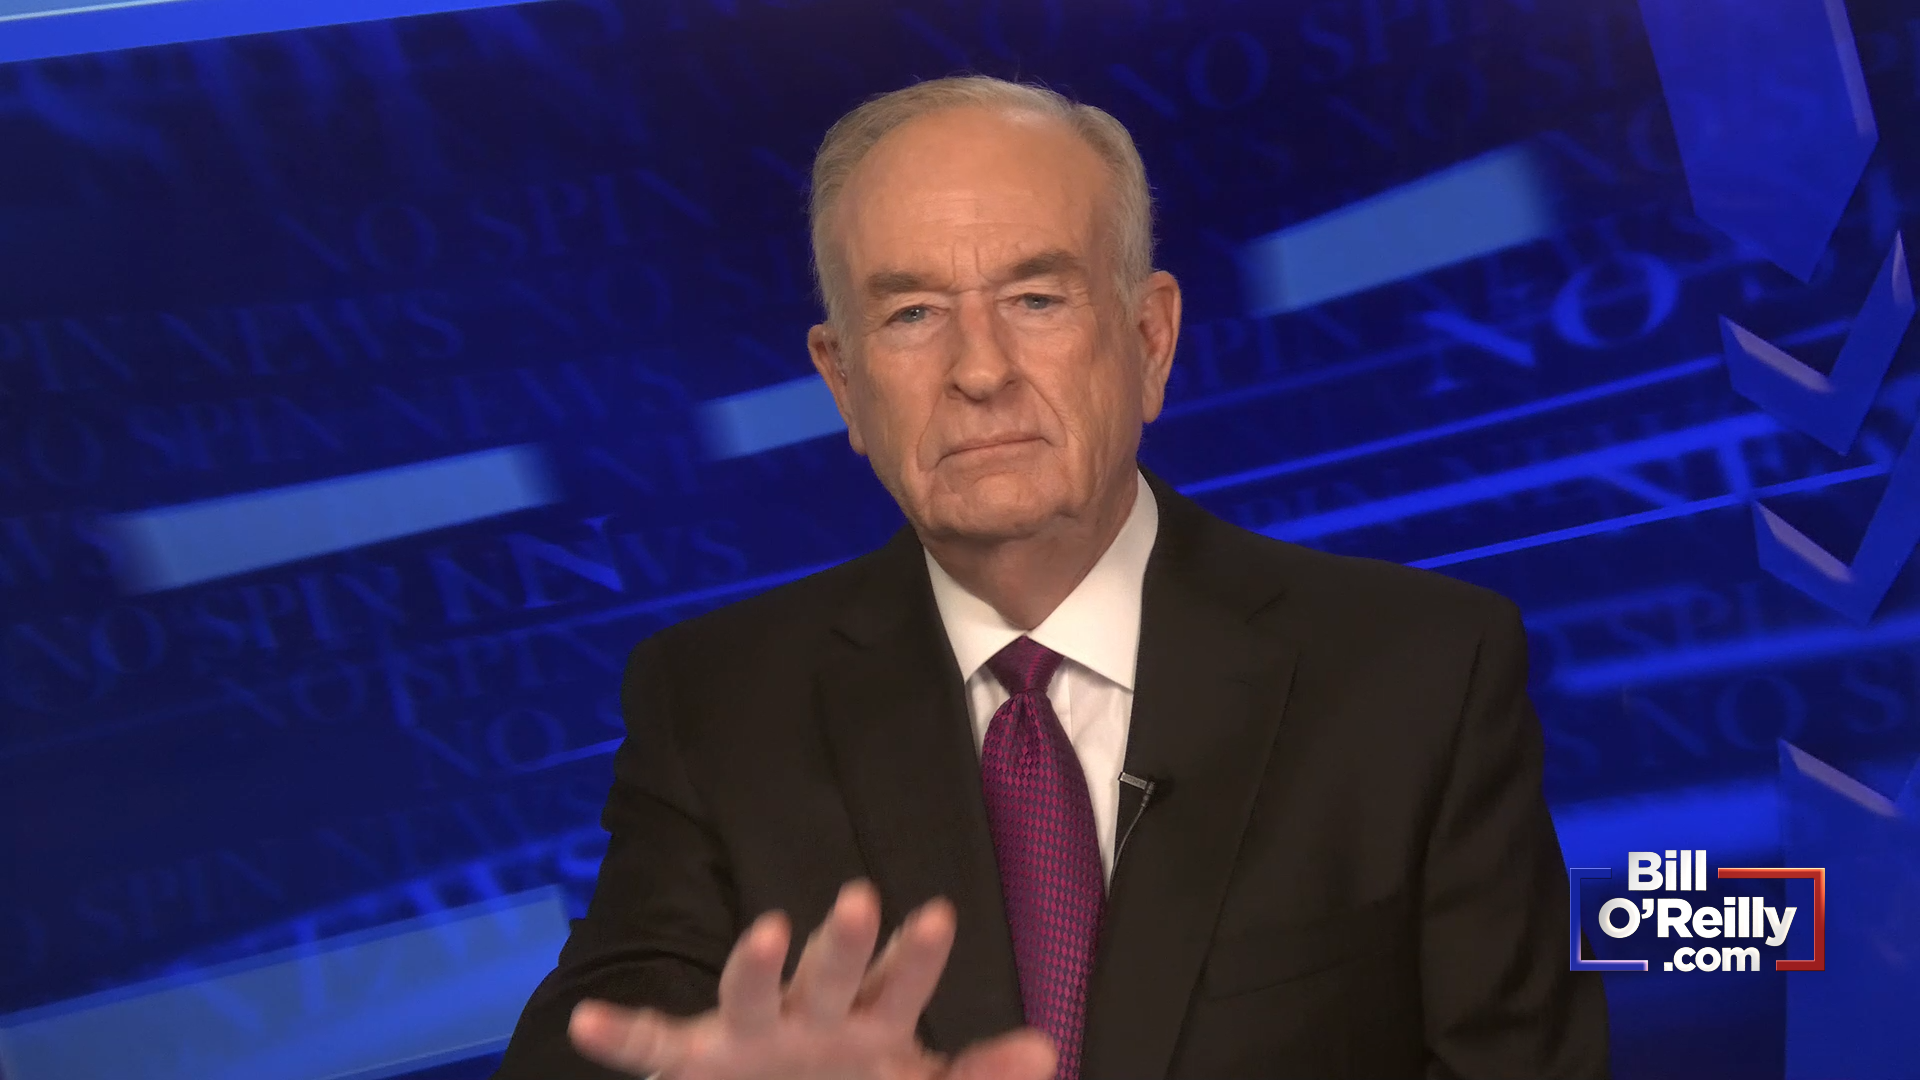 O'Reilly: Joe Biden is Guilty in Classified Documents Case